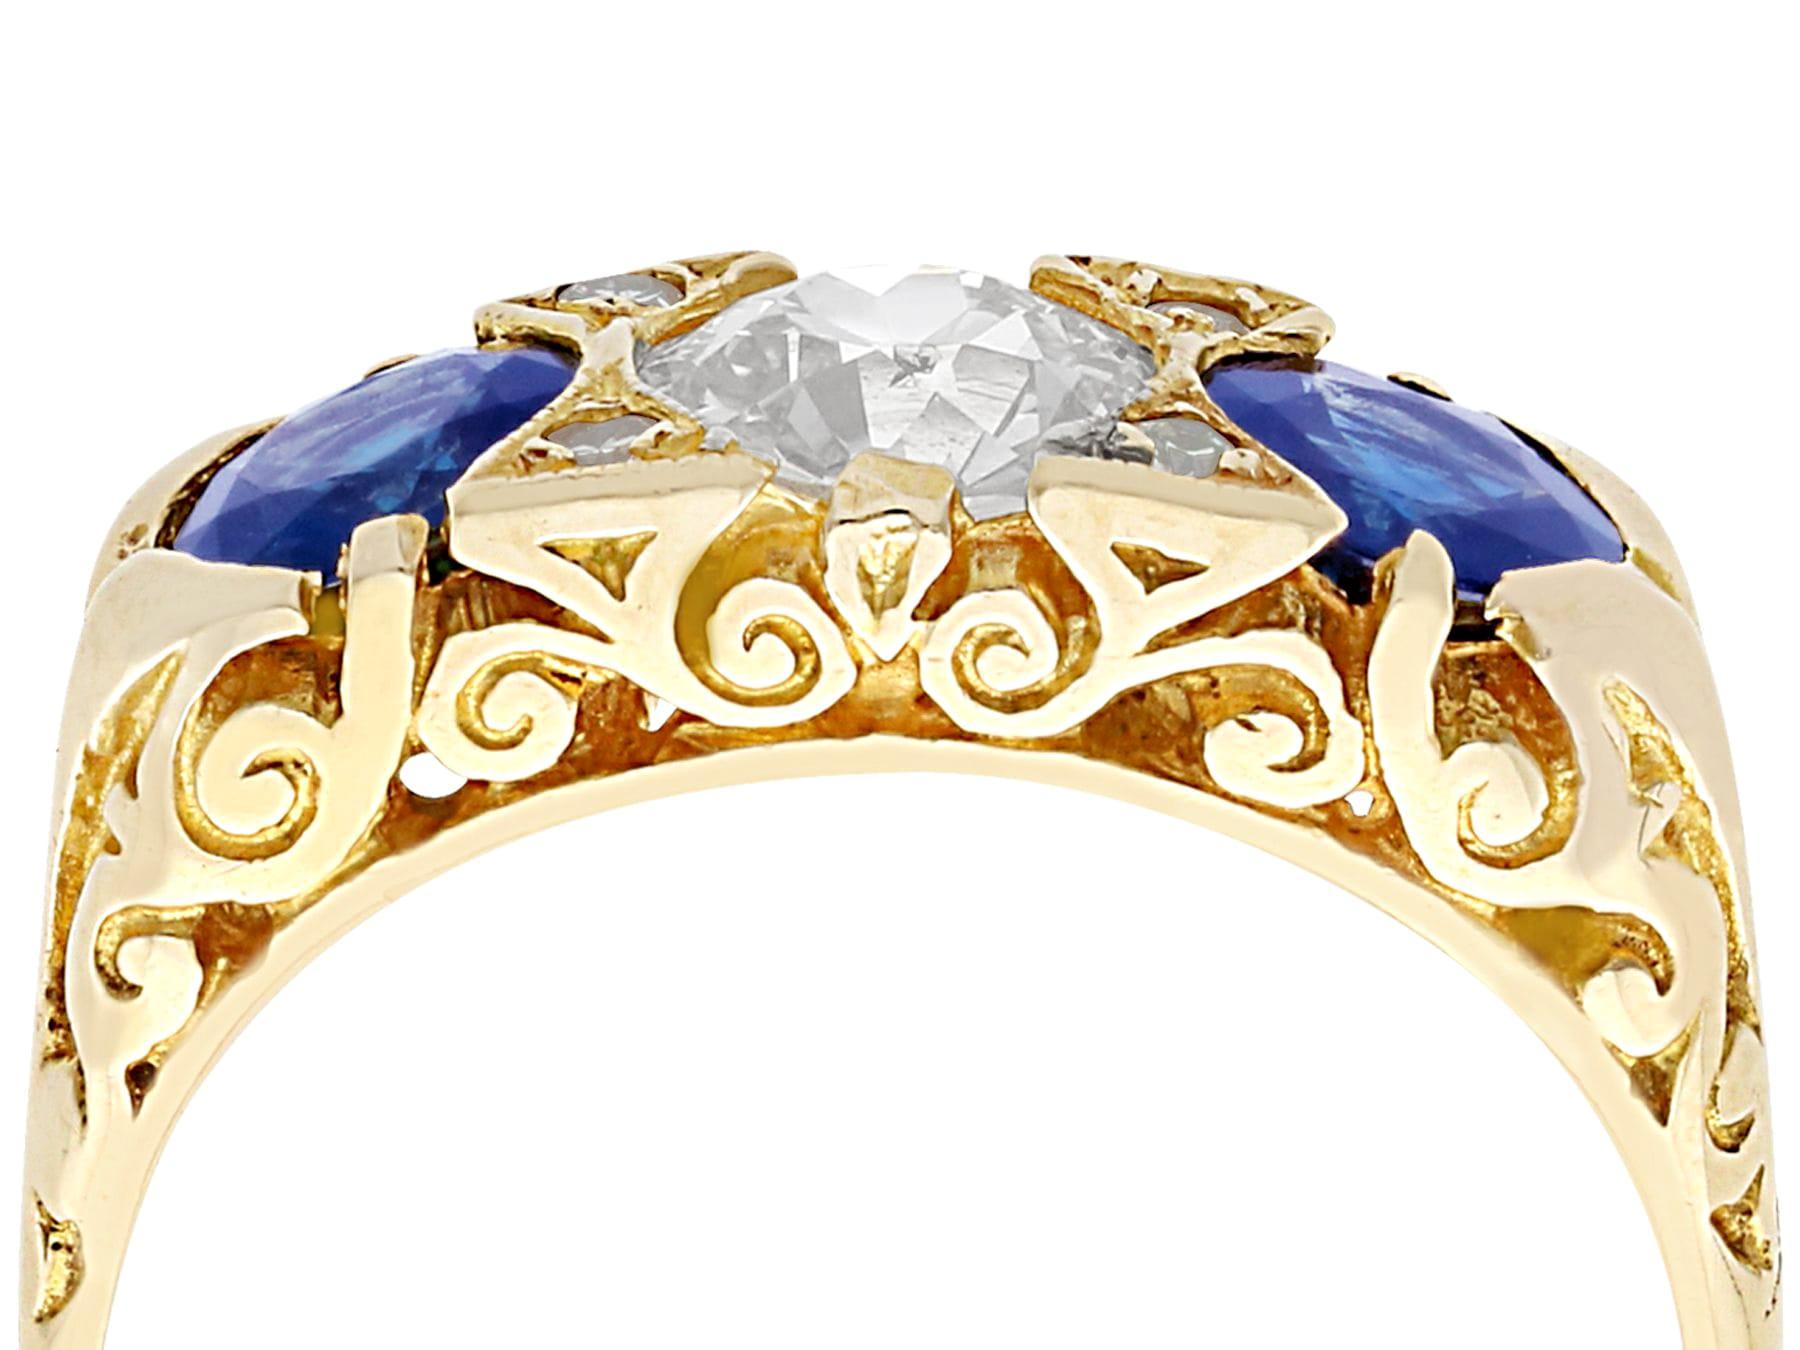 Eine beeindruckende antike 1,32 Karat natürlichen Saphir und 0,81 Karat Diamant, 15 Karat Gelbgold Kleid Ring; Teil unserer vielfältigen Estate Jewelry Collections.

Dieser feine und beeindruckende Saphir- und Diamantring ist aus 15 Karat Gelbgold